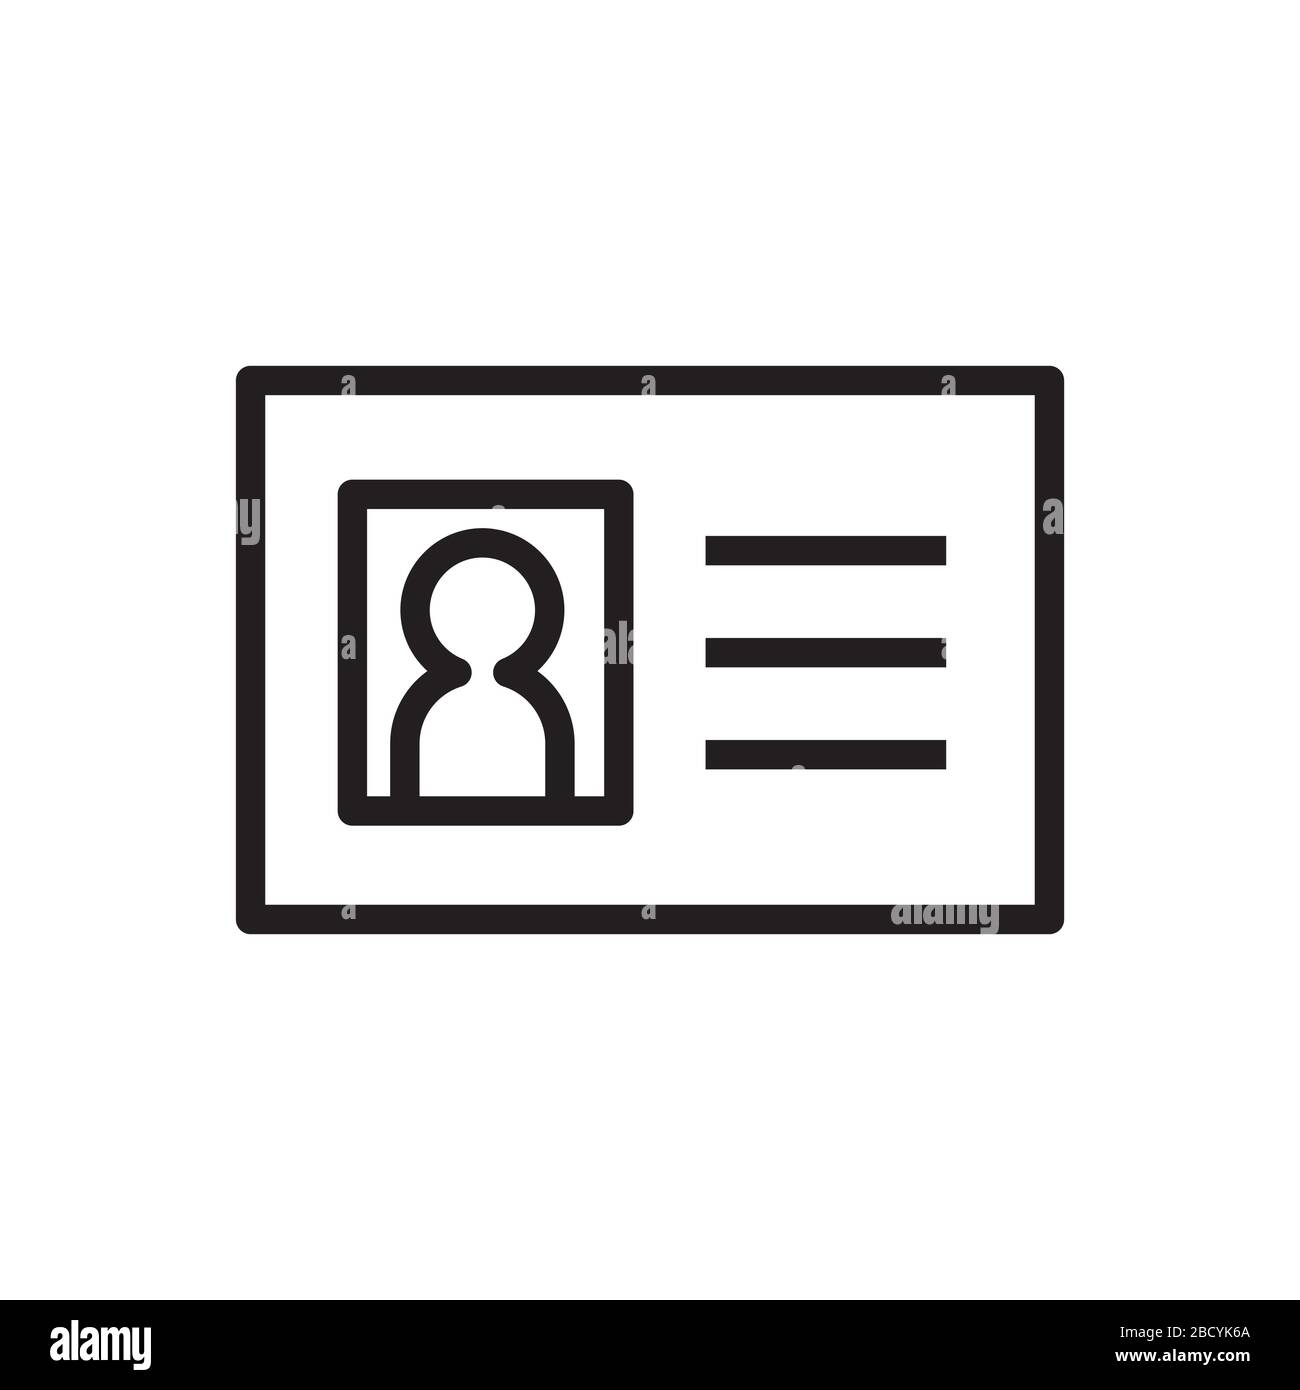 Icona della carta d'identità / della carta d'identità / della patente di guida Illustrazione Vettoriale